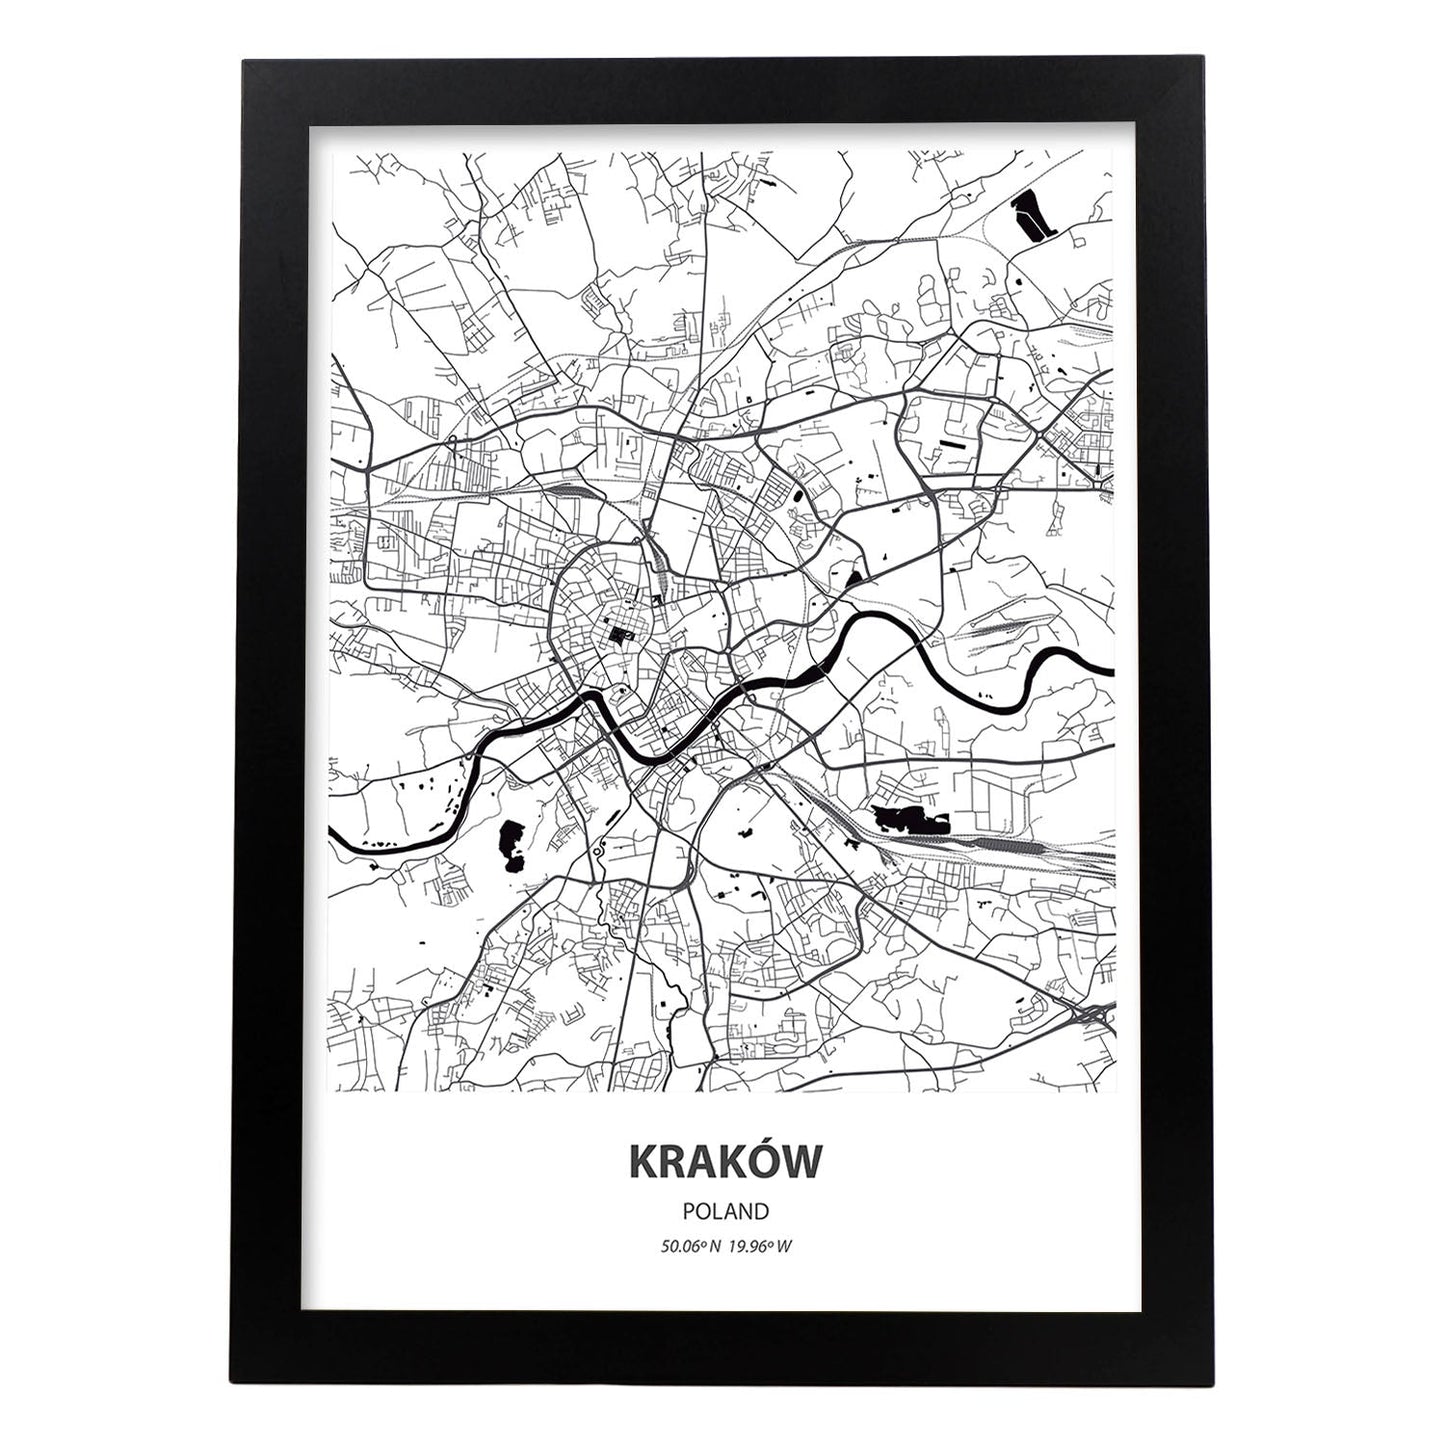 Poster con mapa de Krakow - Polonia. Láminas de ciudades de Europa con mares y ríos en color negro.-Artwork-Nacnic-A3-Marco Negro-Nacnic Estudio SL